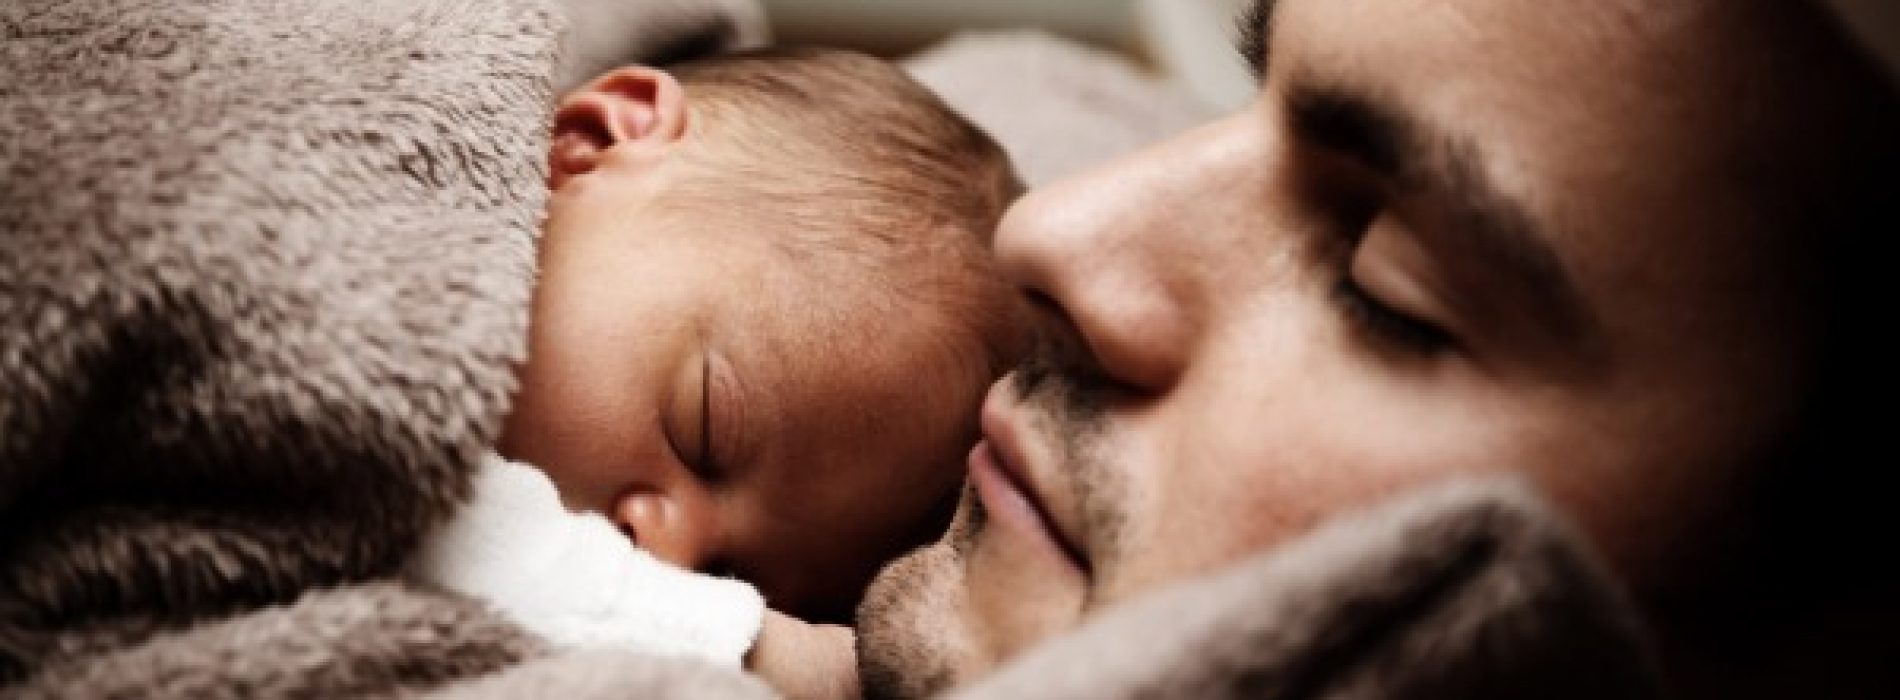 Vaderschapstest wijst uit dat man de vader niet is; ongeboren tweelingbroer is dat wel